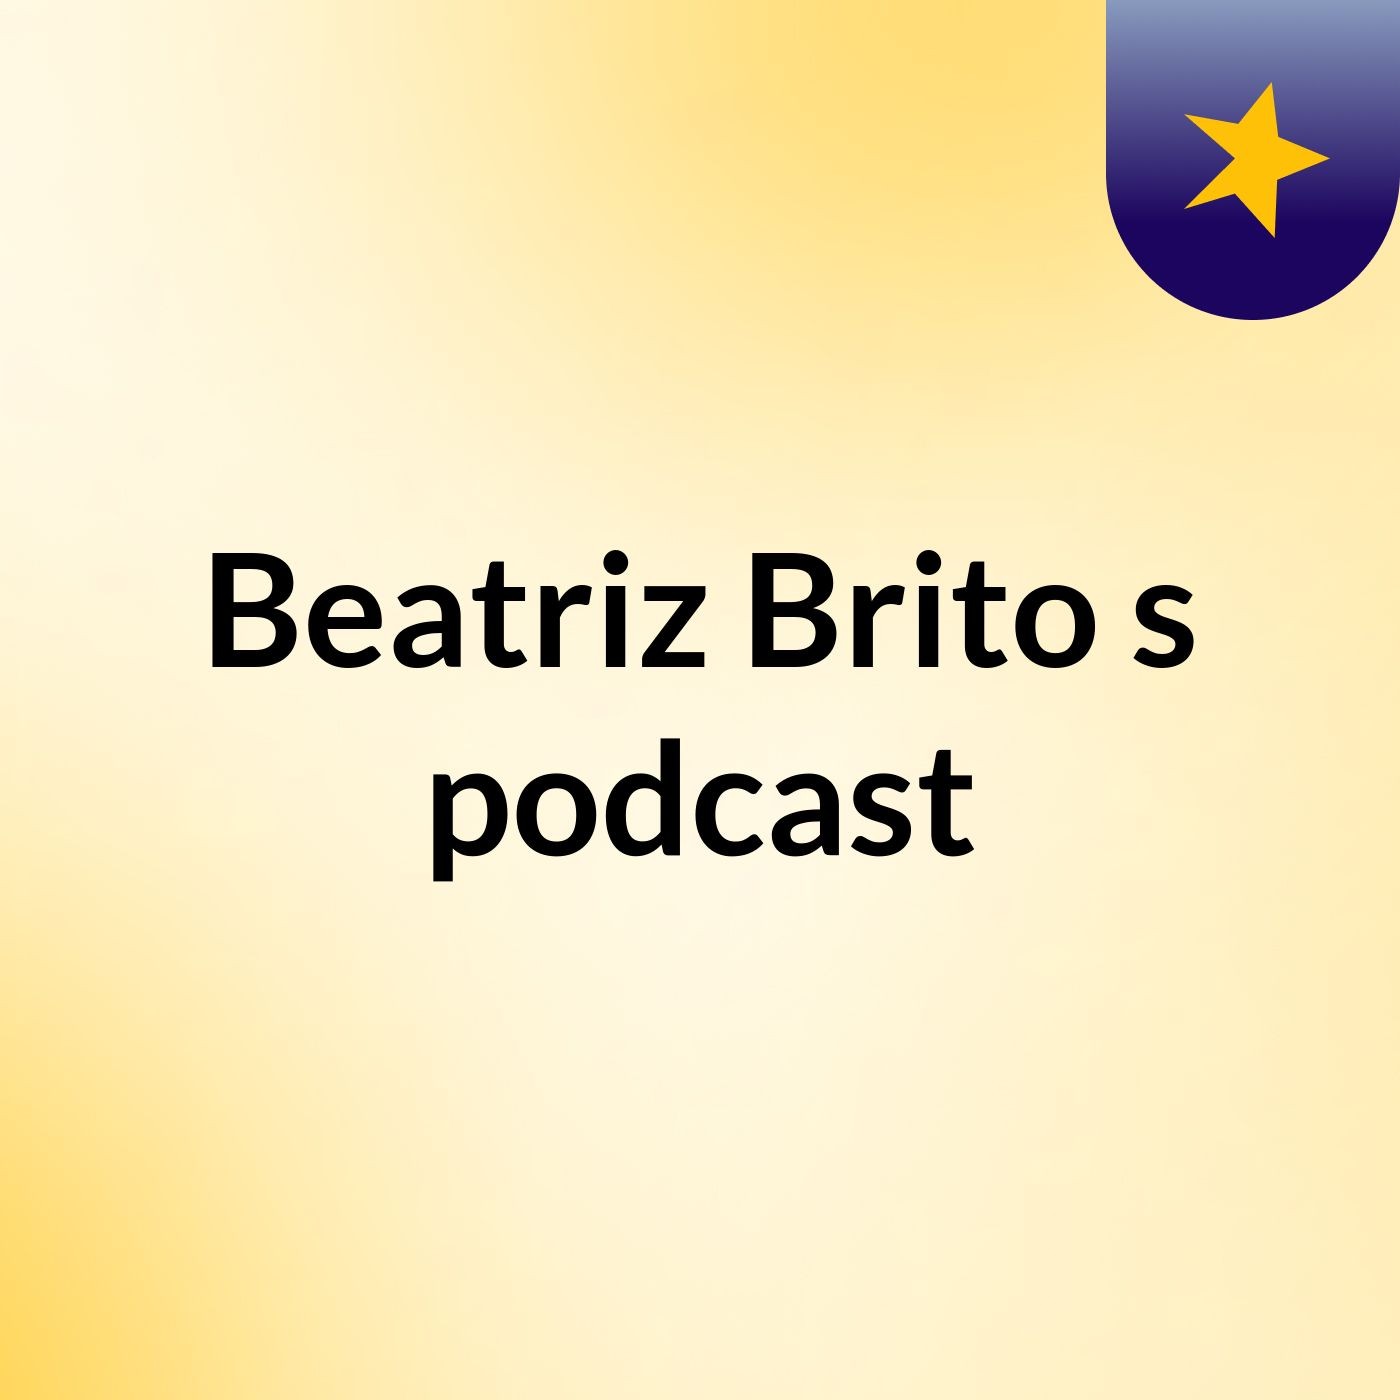 Beatriz Brito's podcast